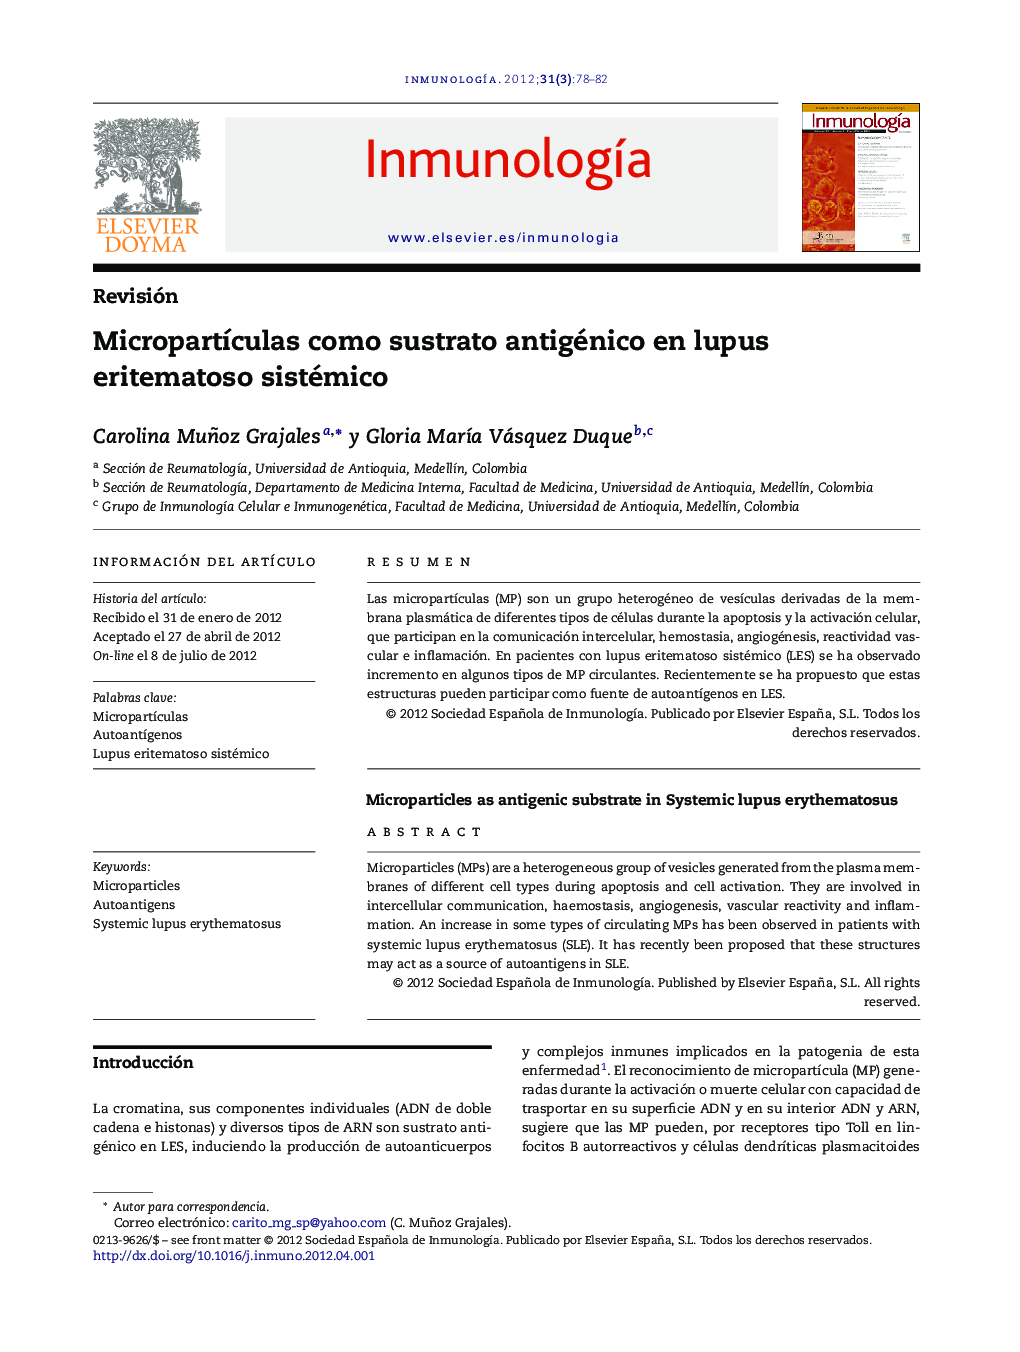 MicropartÃ­culas como sustrato antigénico en lupus eritematoso sistémico